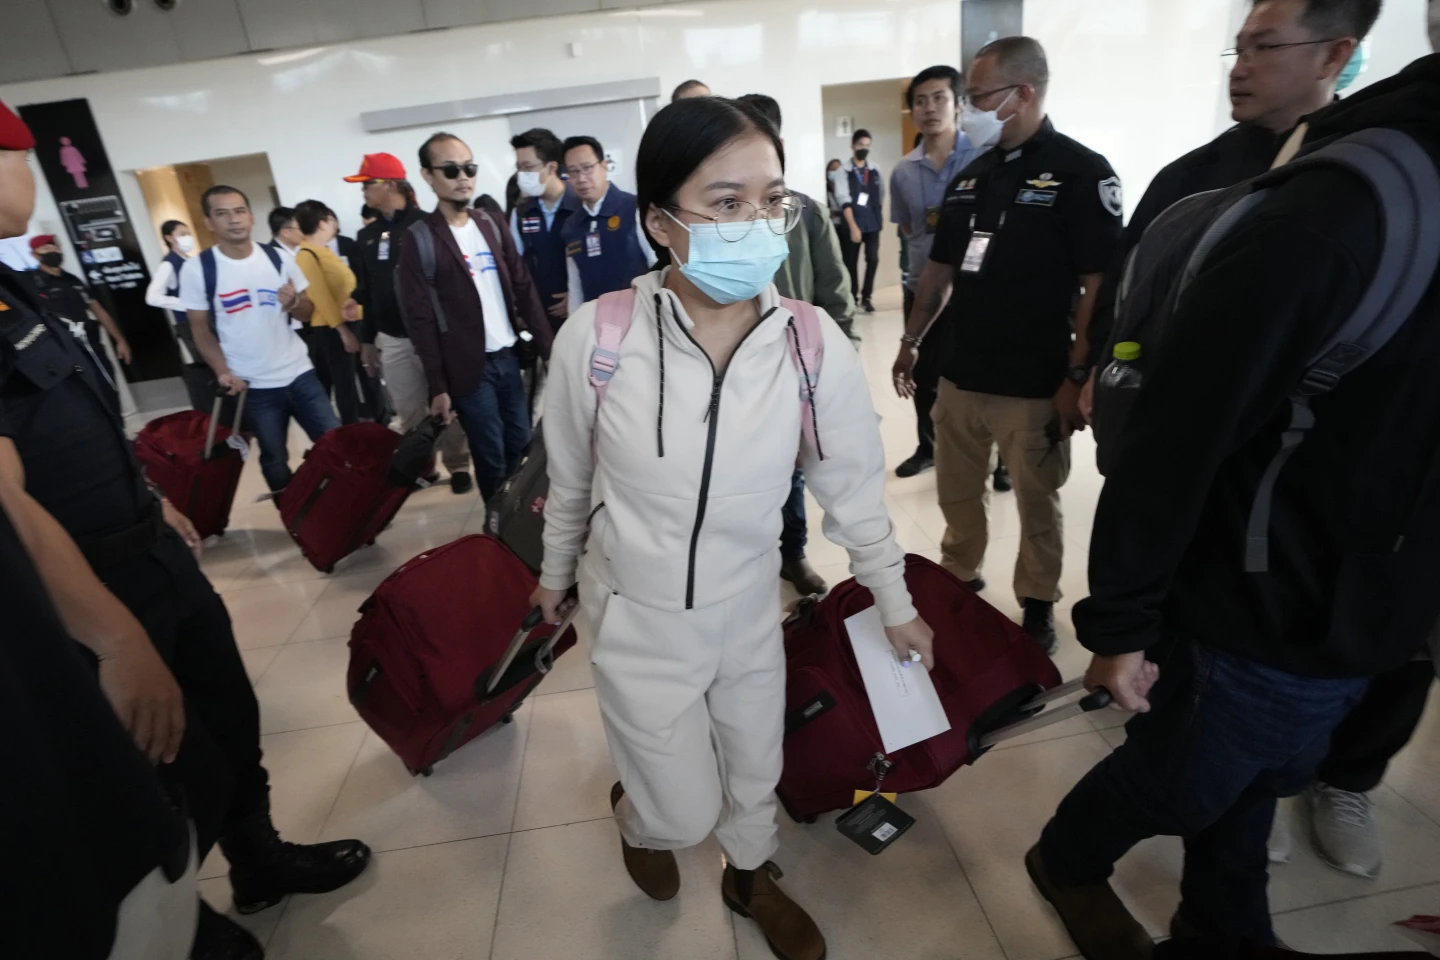 ครอบครัวรวมตัวกับตัวประกันชาวไทย 17 คนที่ได้รับอิสรภาพจากกลุ่มฮามาสที่สนามบินกรุงเทพฯ